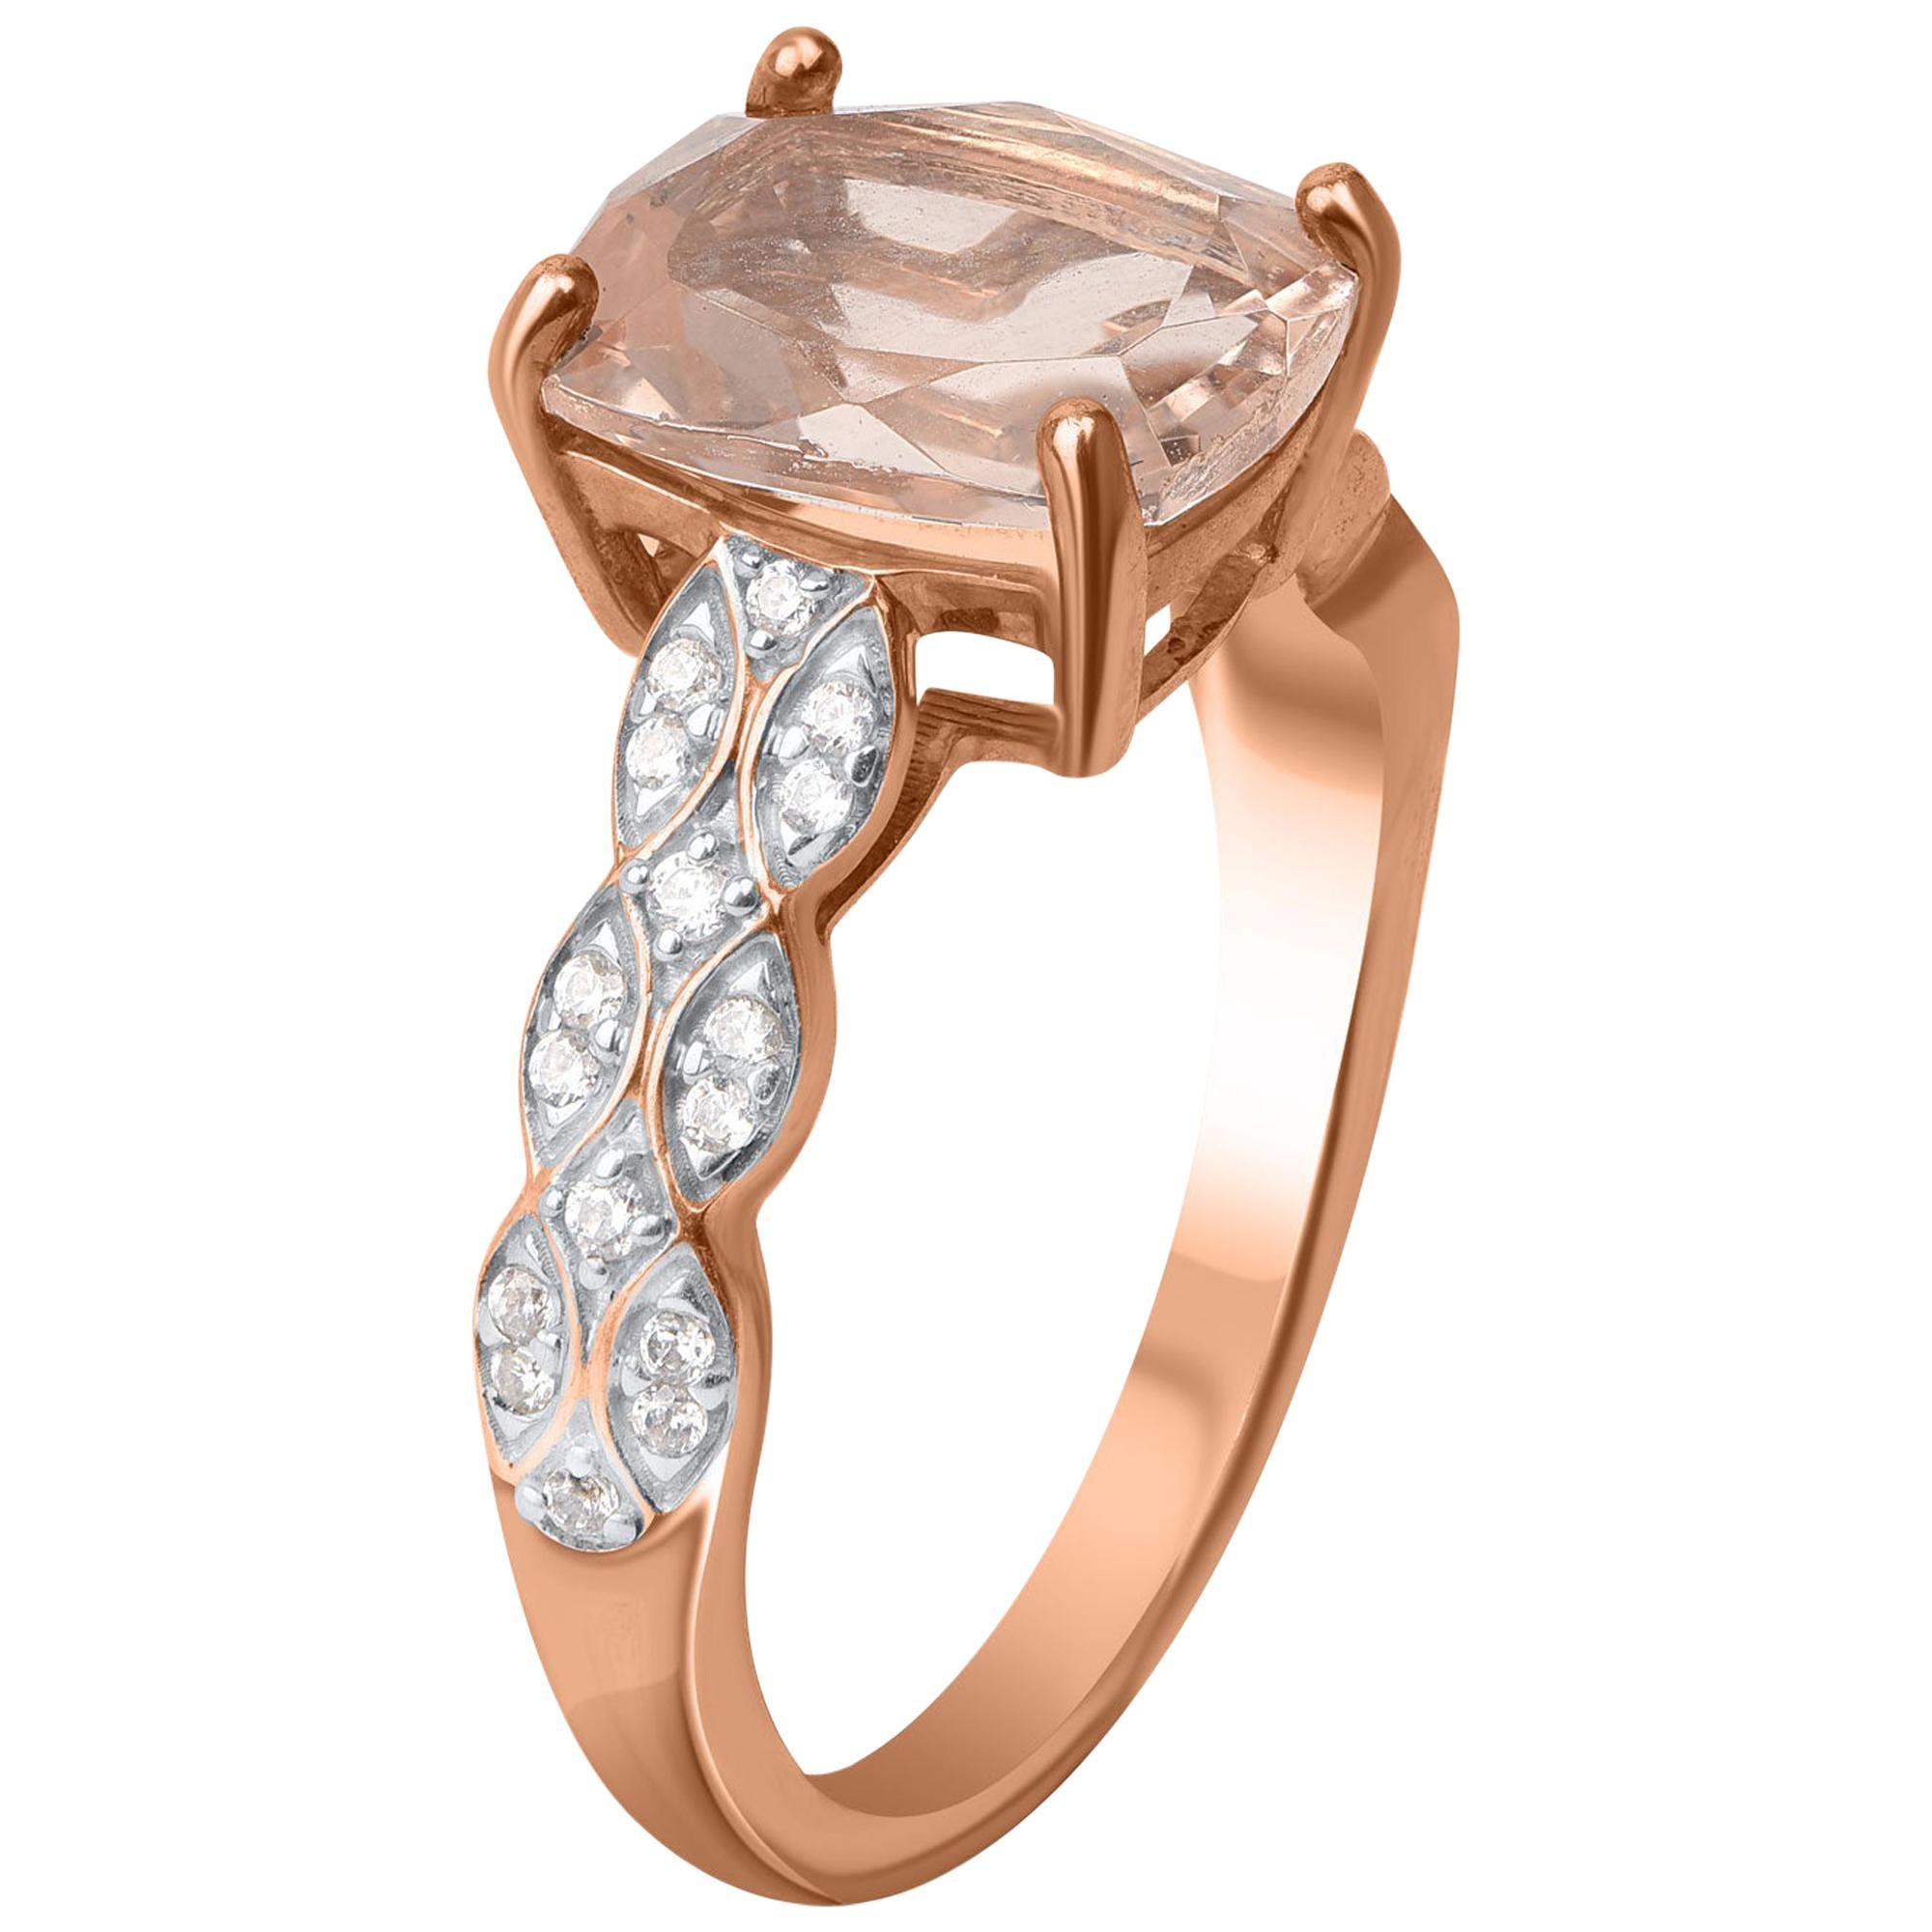 L'anneau est fabriqué en or rose 14 KT et est constellé de 32 diamants naturels brillants et d'une morganite naturelle en pavé et en broche. Les diamants sont classés couleur HI, pureté I2. 
Ce diamant confort et cette morganite naturelle